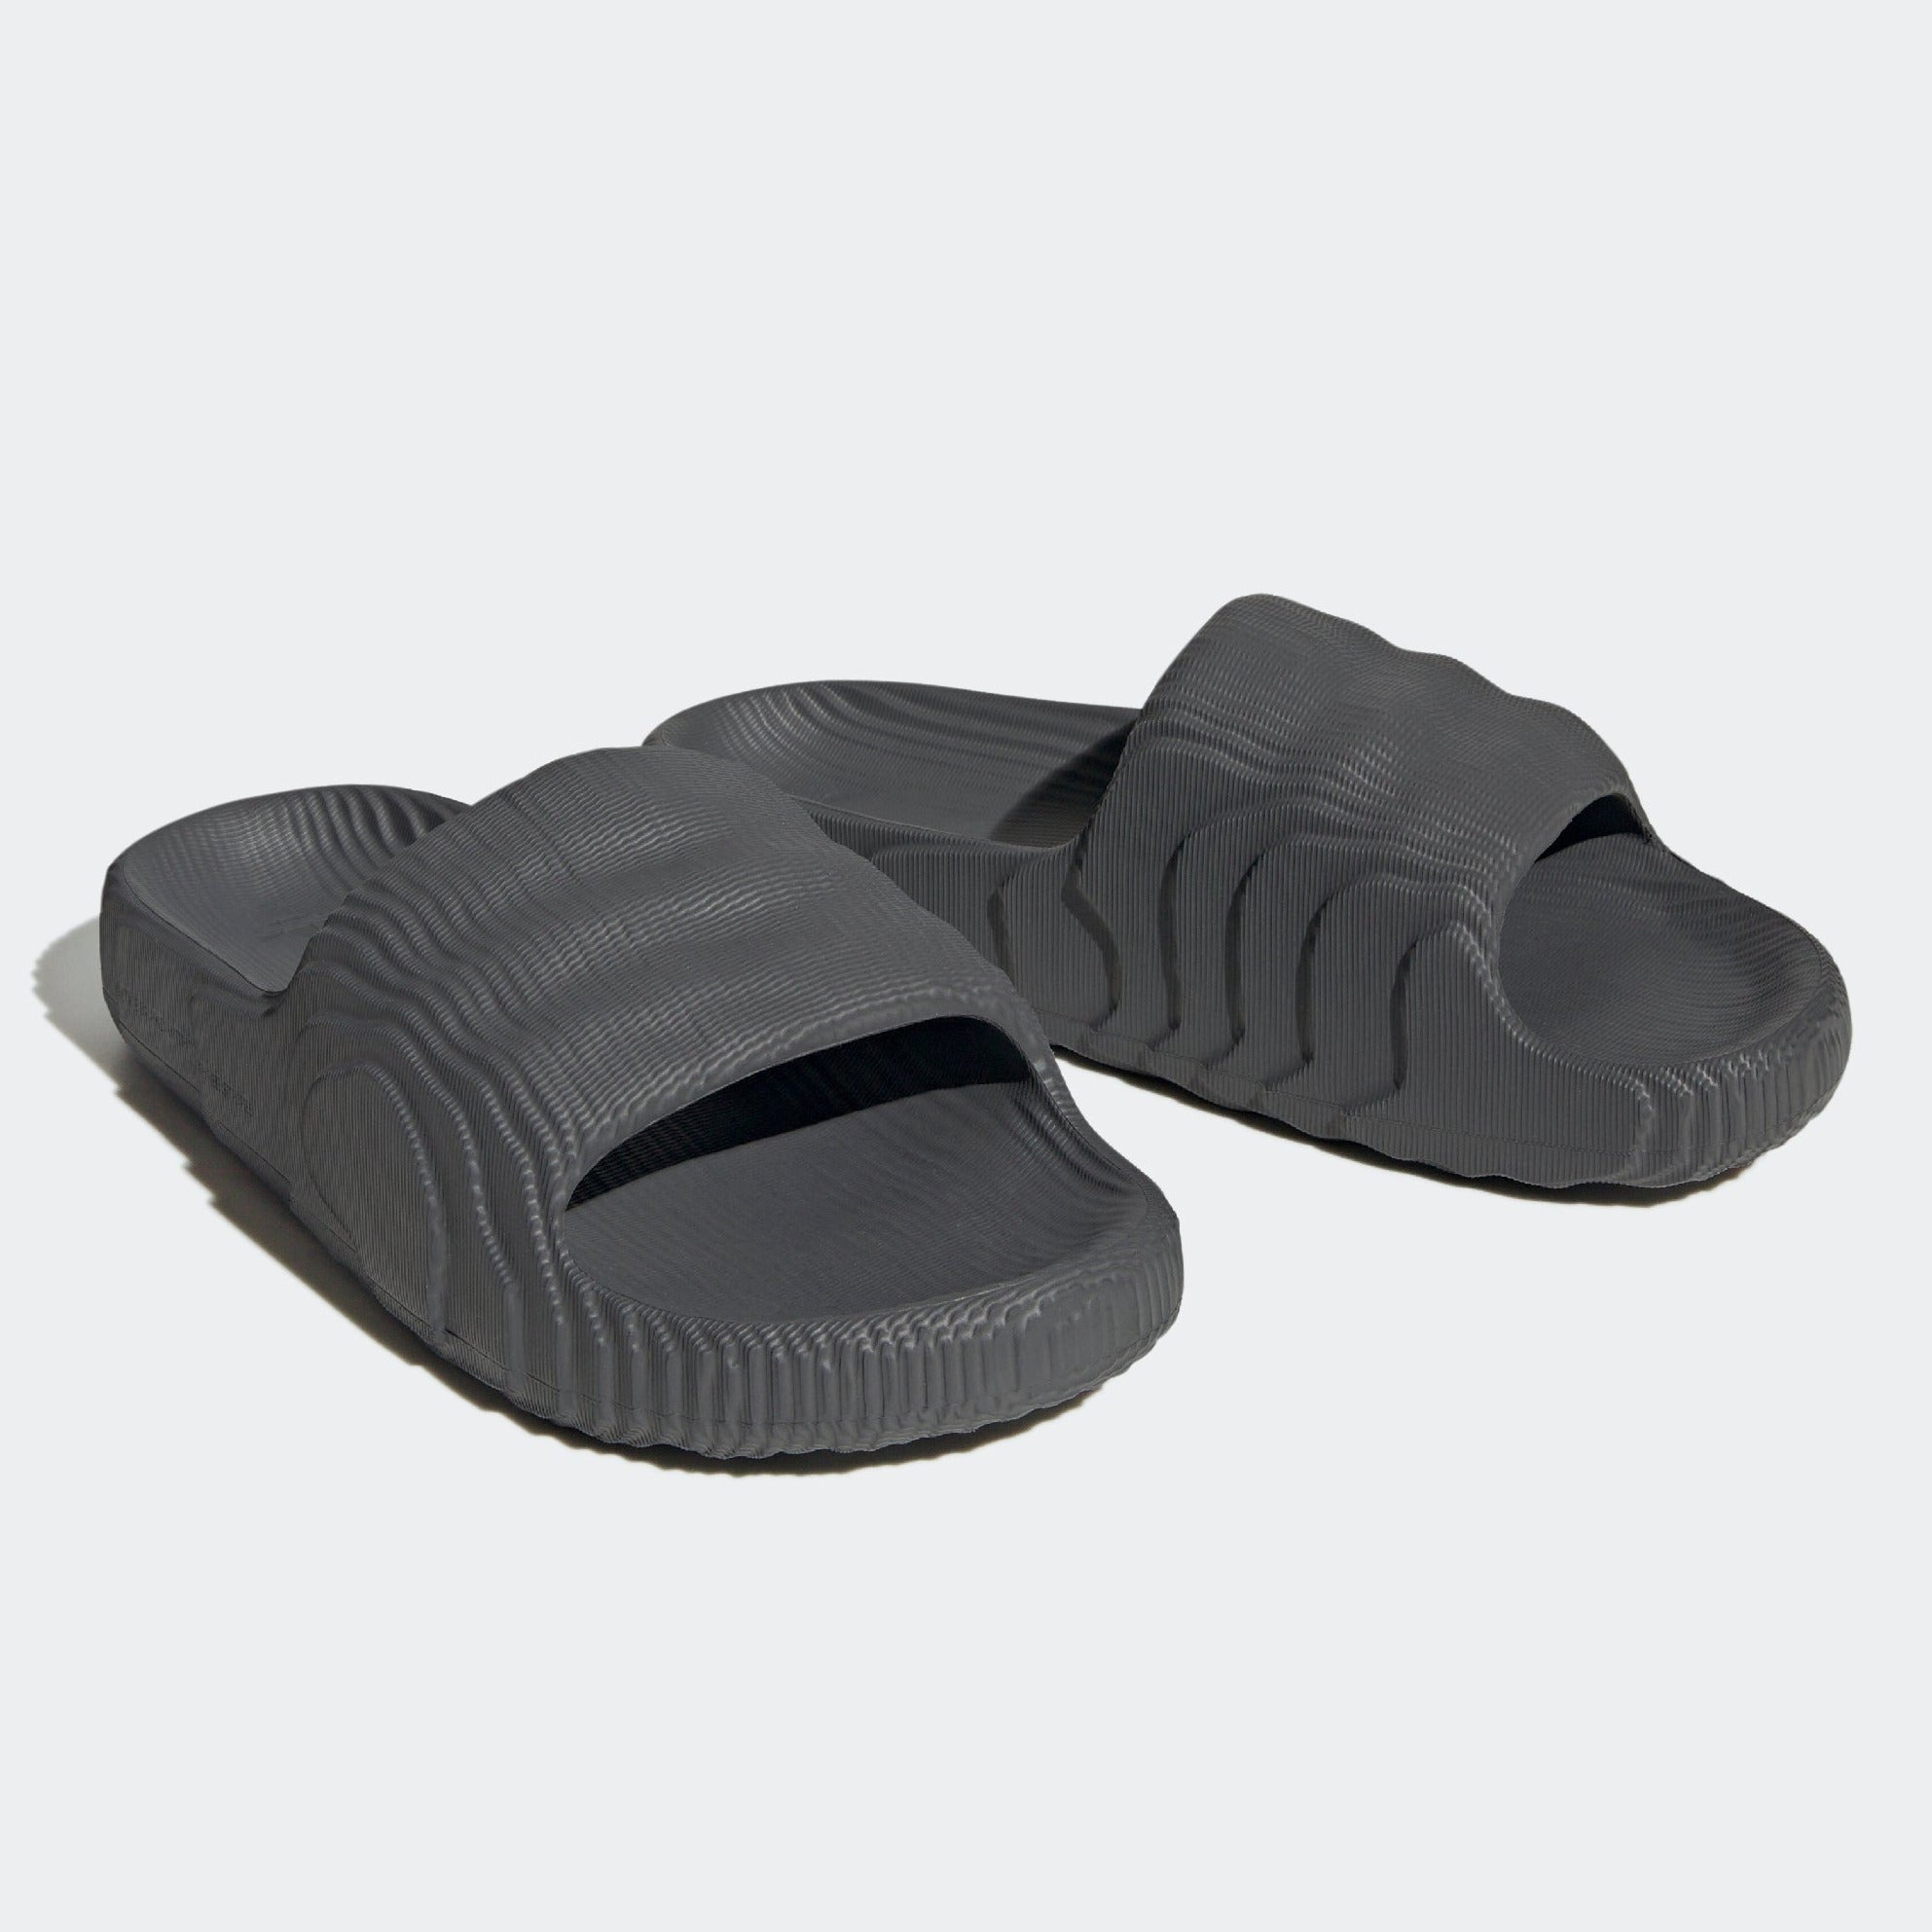 Adidas Adilette Cloudfoam Slides Men's size 6 Flip Flop Casual Sandals |  eBay